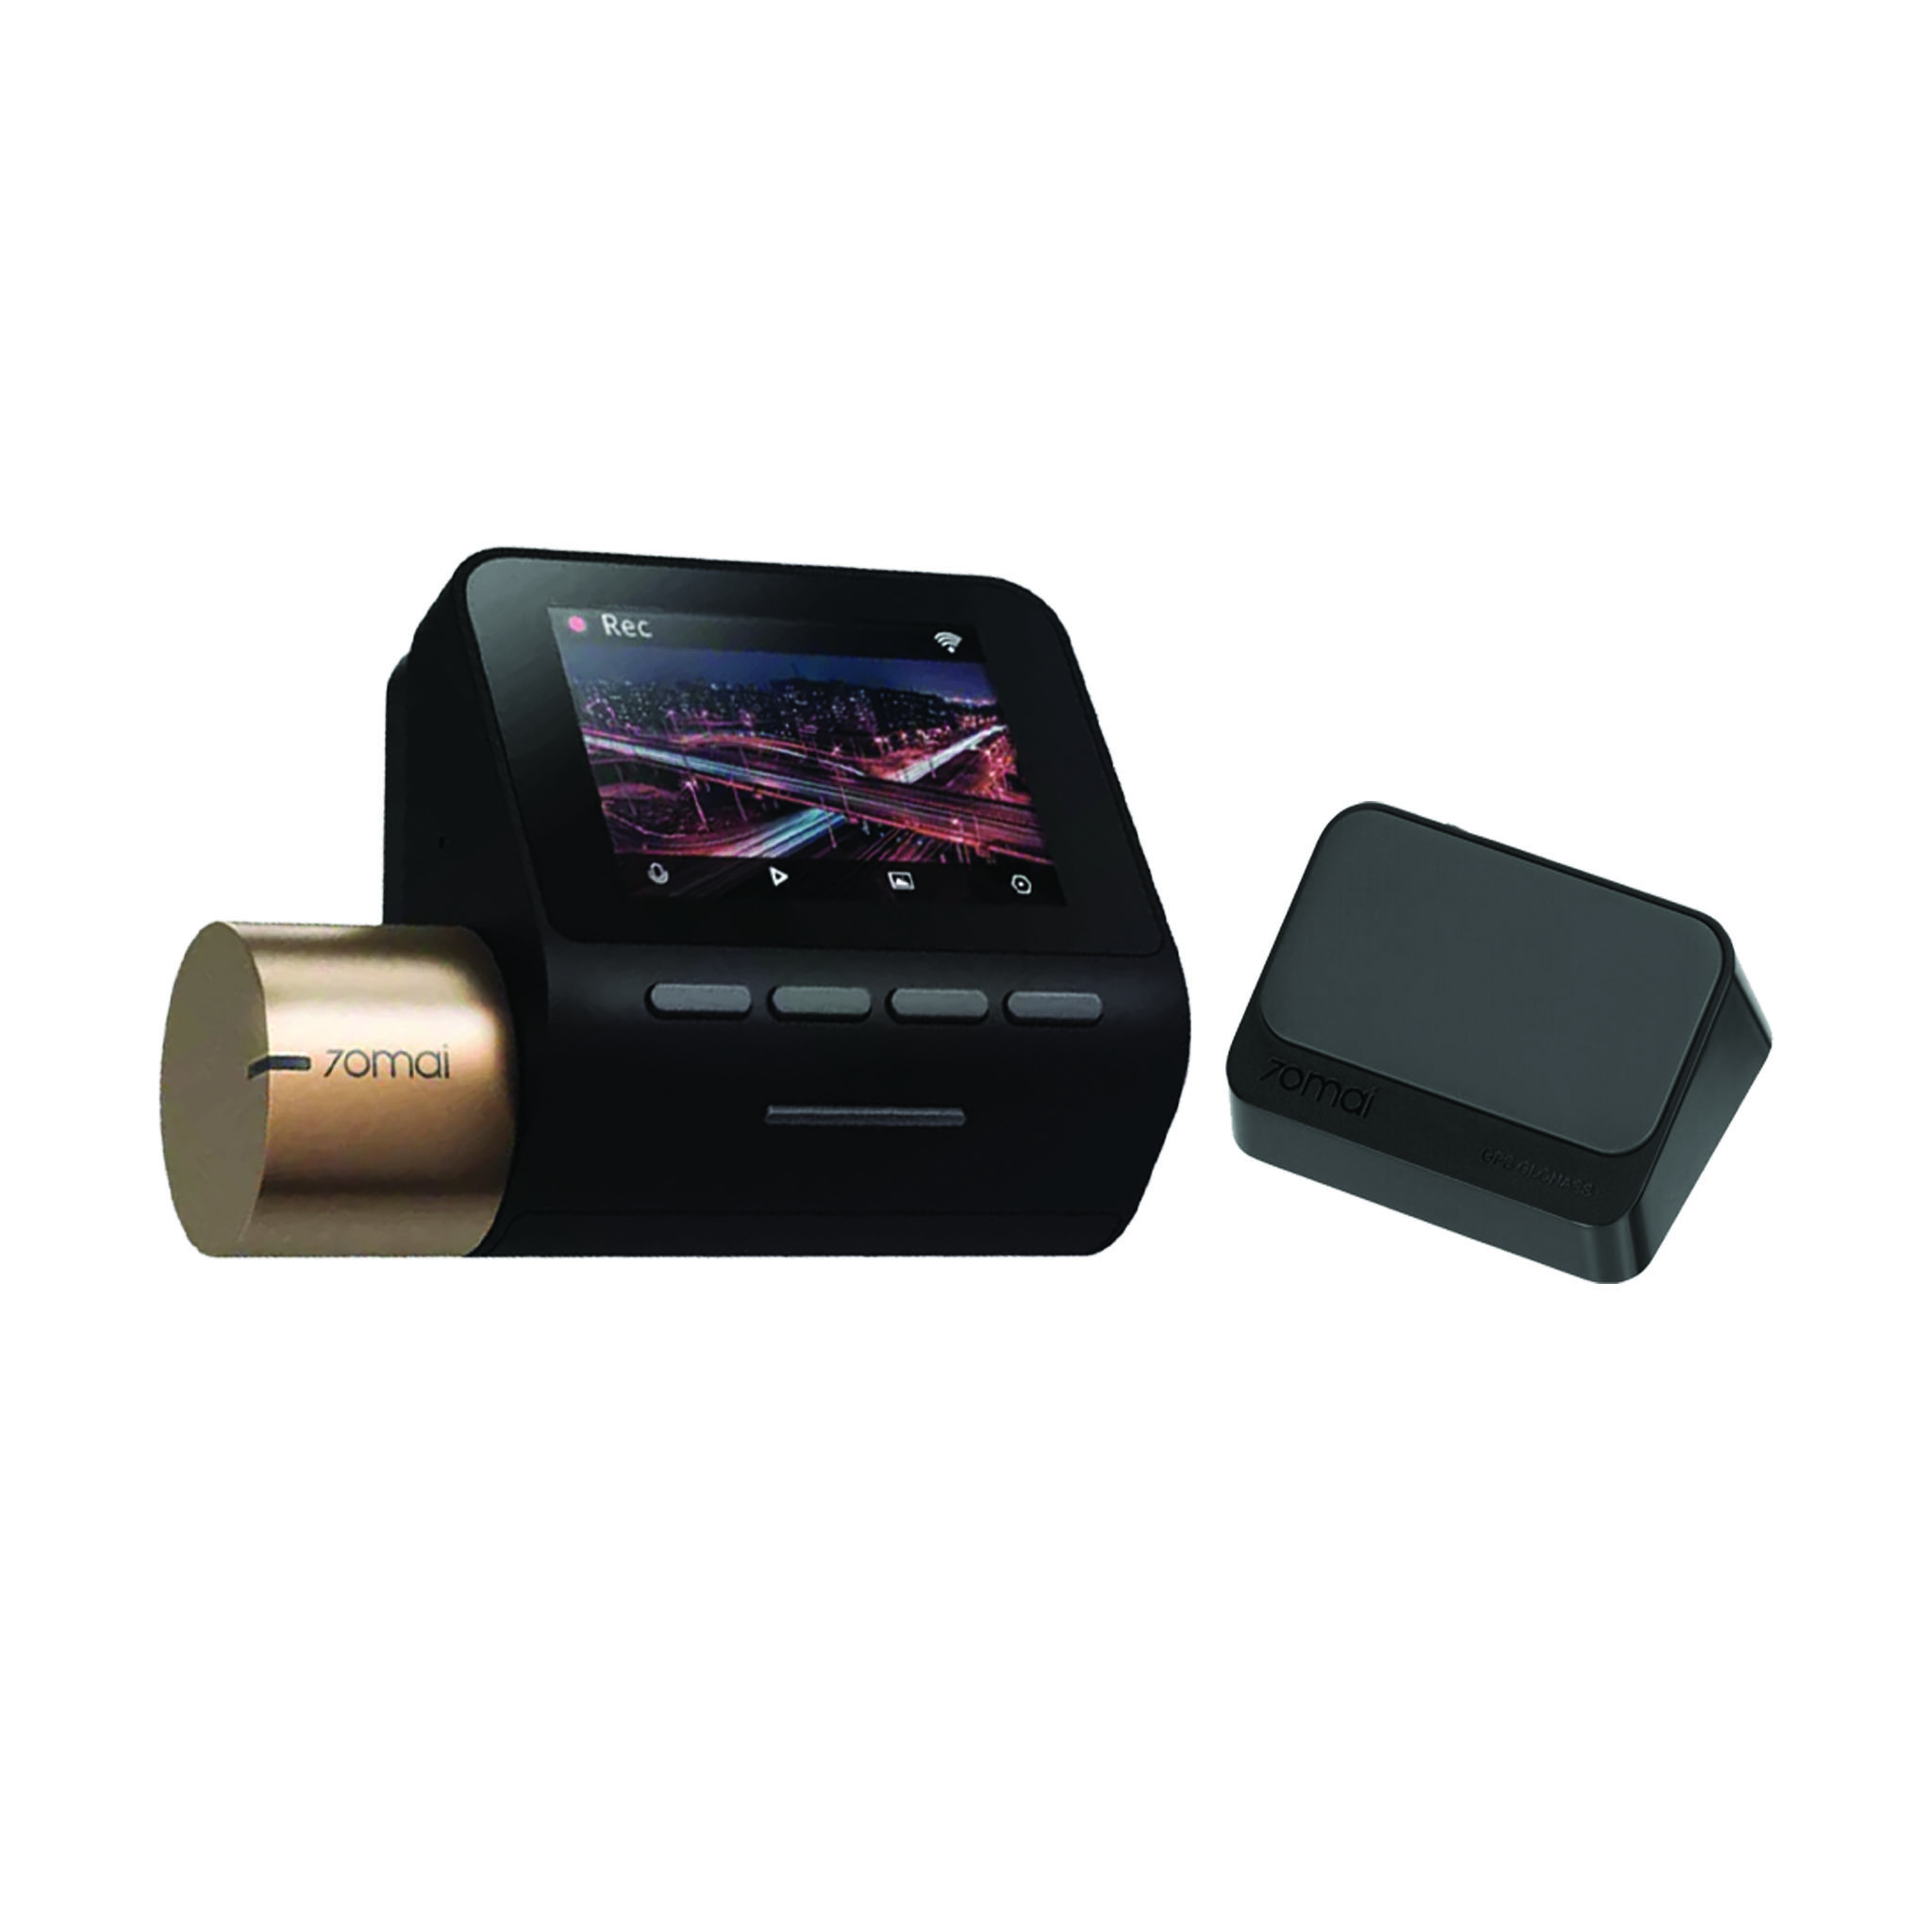 70Mai DashCam Dash Cam Camera Lite 2 with GPS (Opsional) - Kamera Mobil -  Mi Gadget Malang